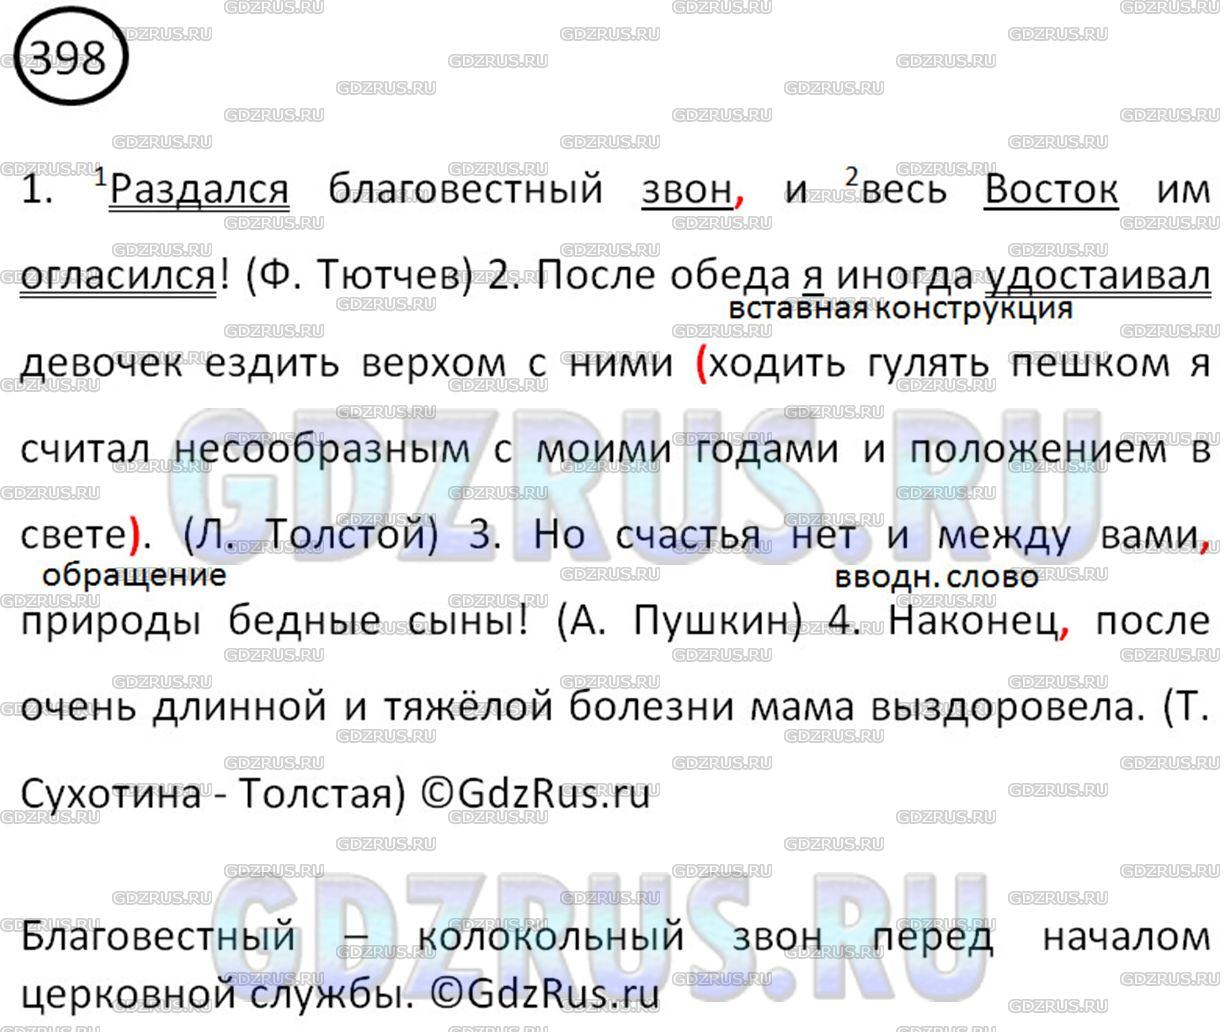 Фото решения 3: ГДЗ по Русскому языку 8 класса: Ладыженская Упр. 398